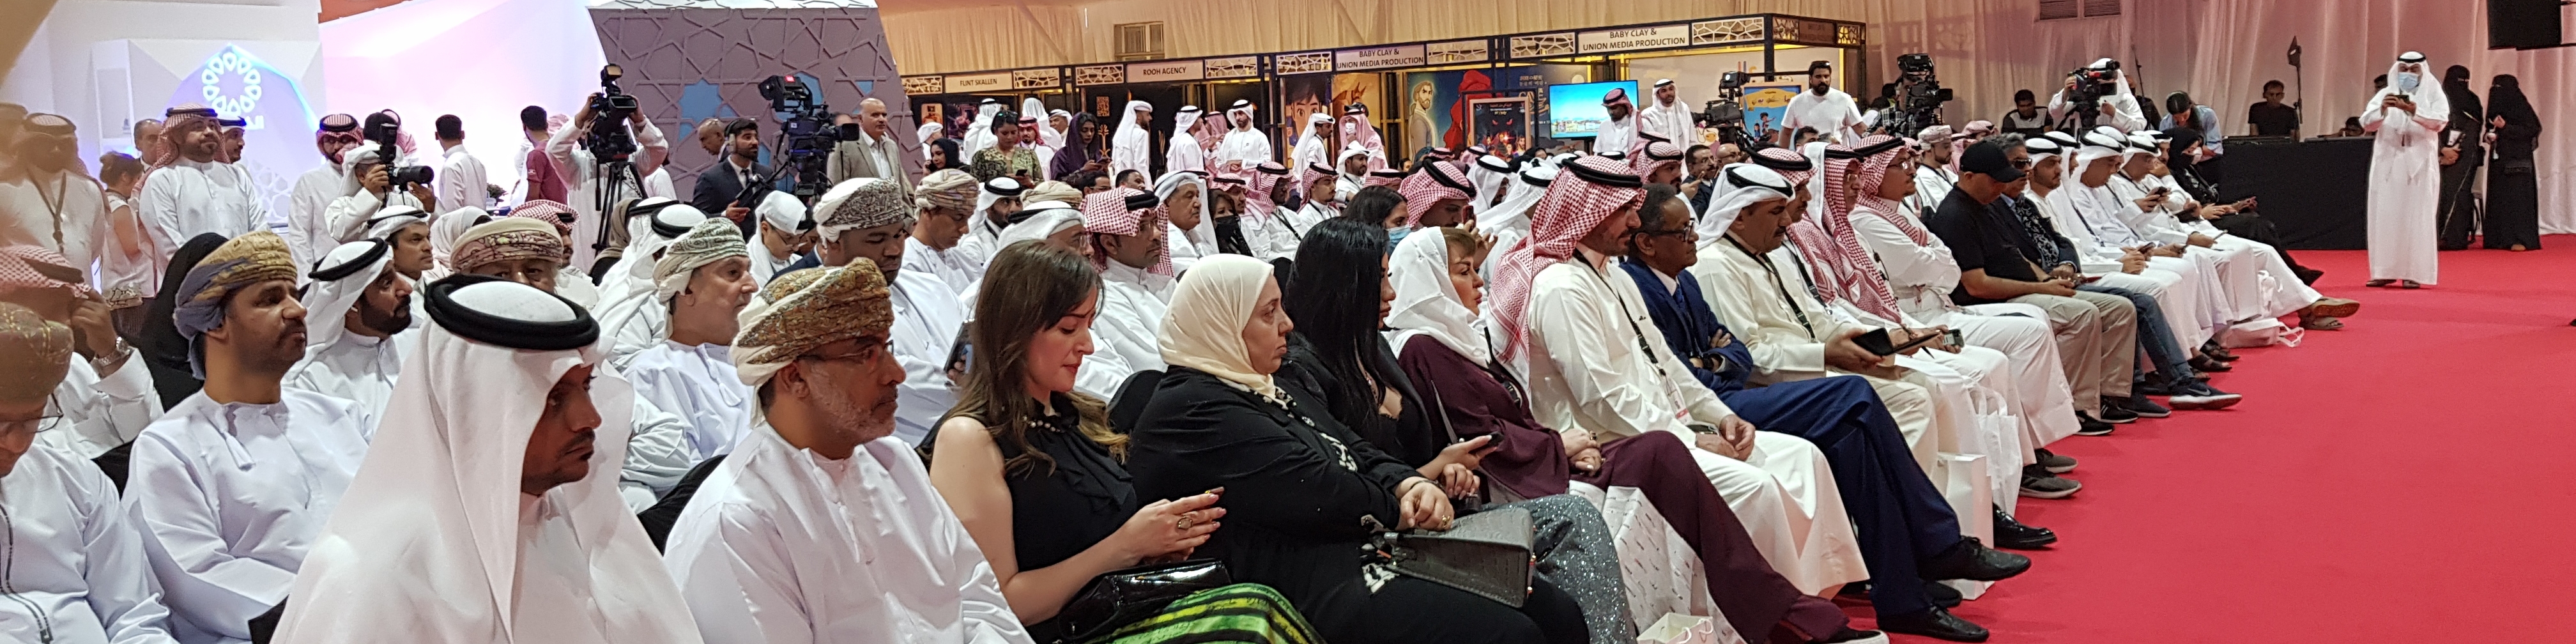 انطلاق مهرجان الخليج للإذاعة والتلفزيون والاتحاد يشارك في المهرجان  ويواكب فعالياته  